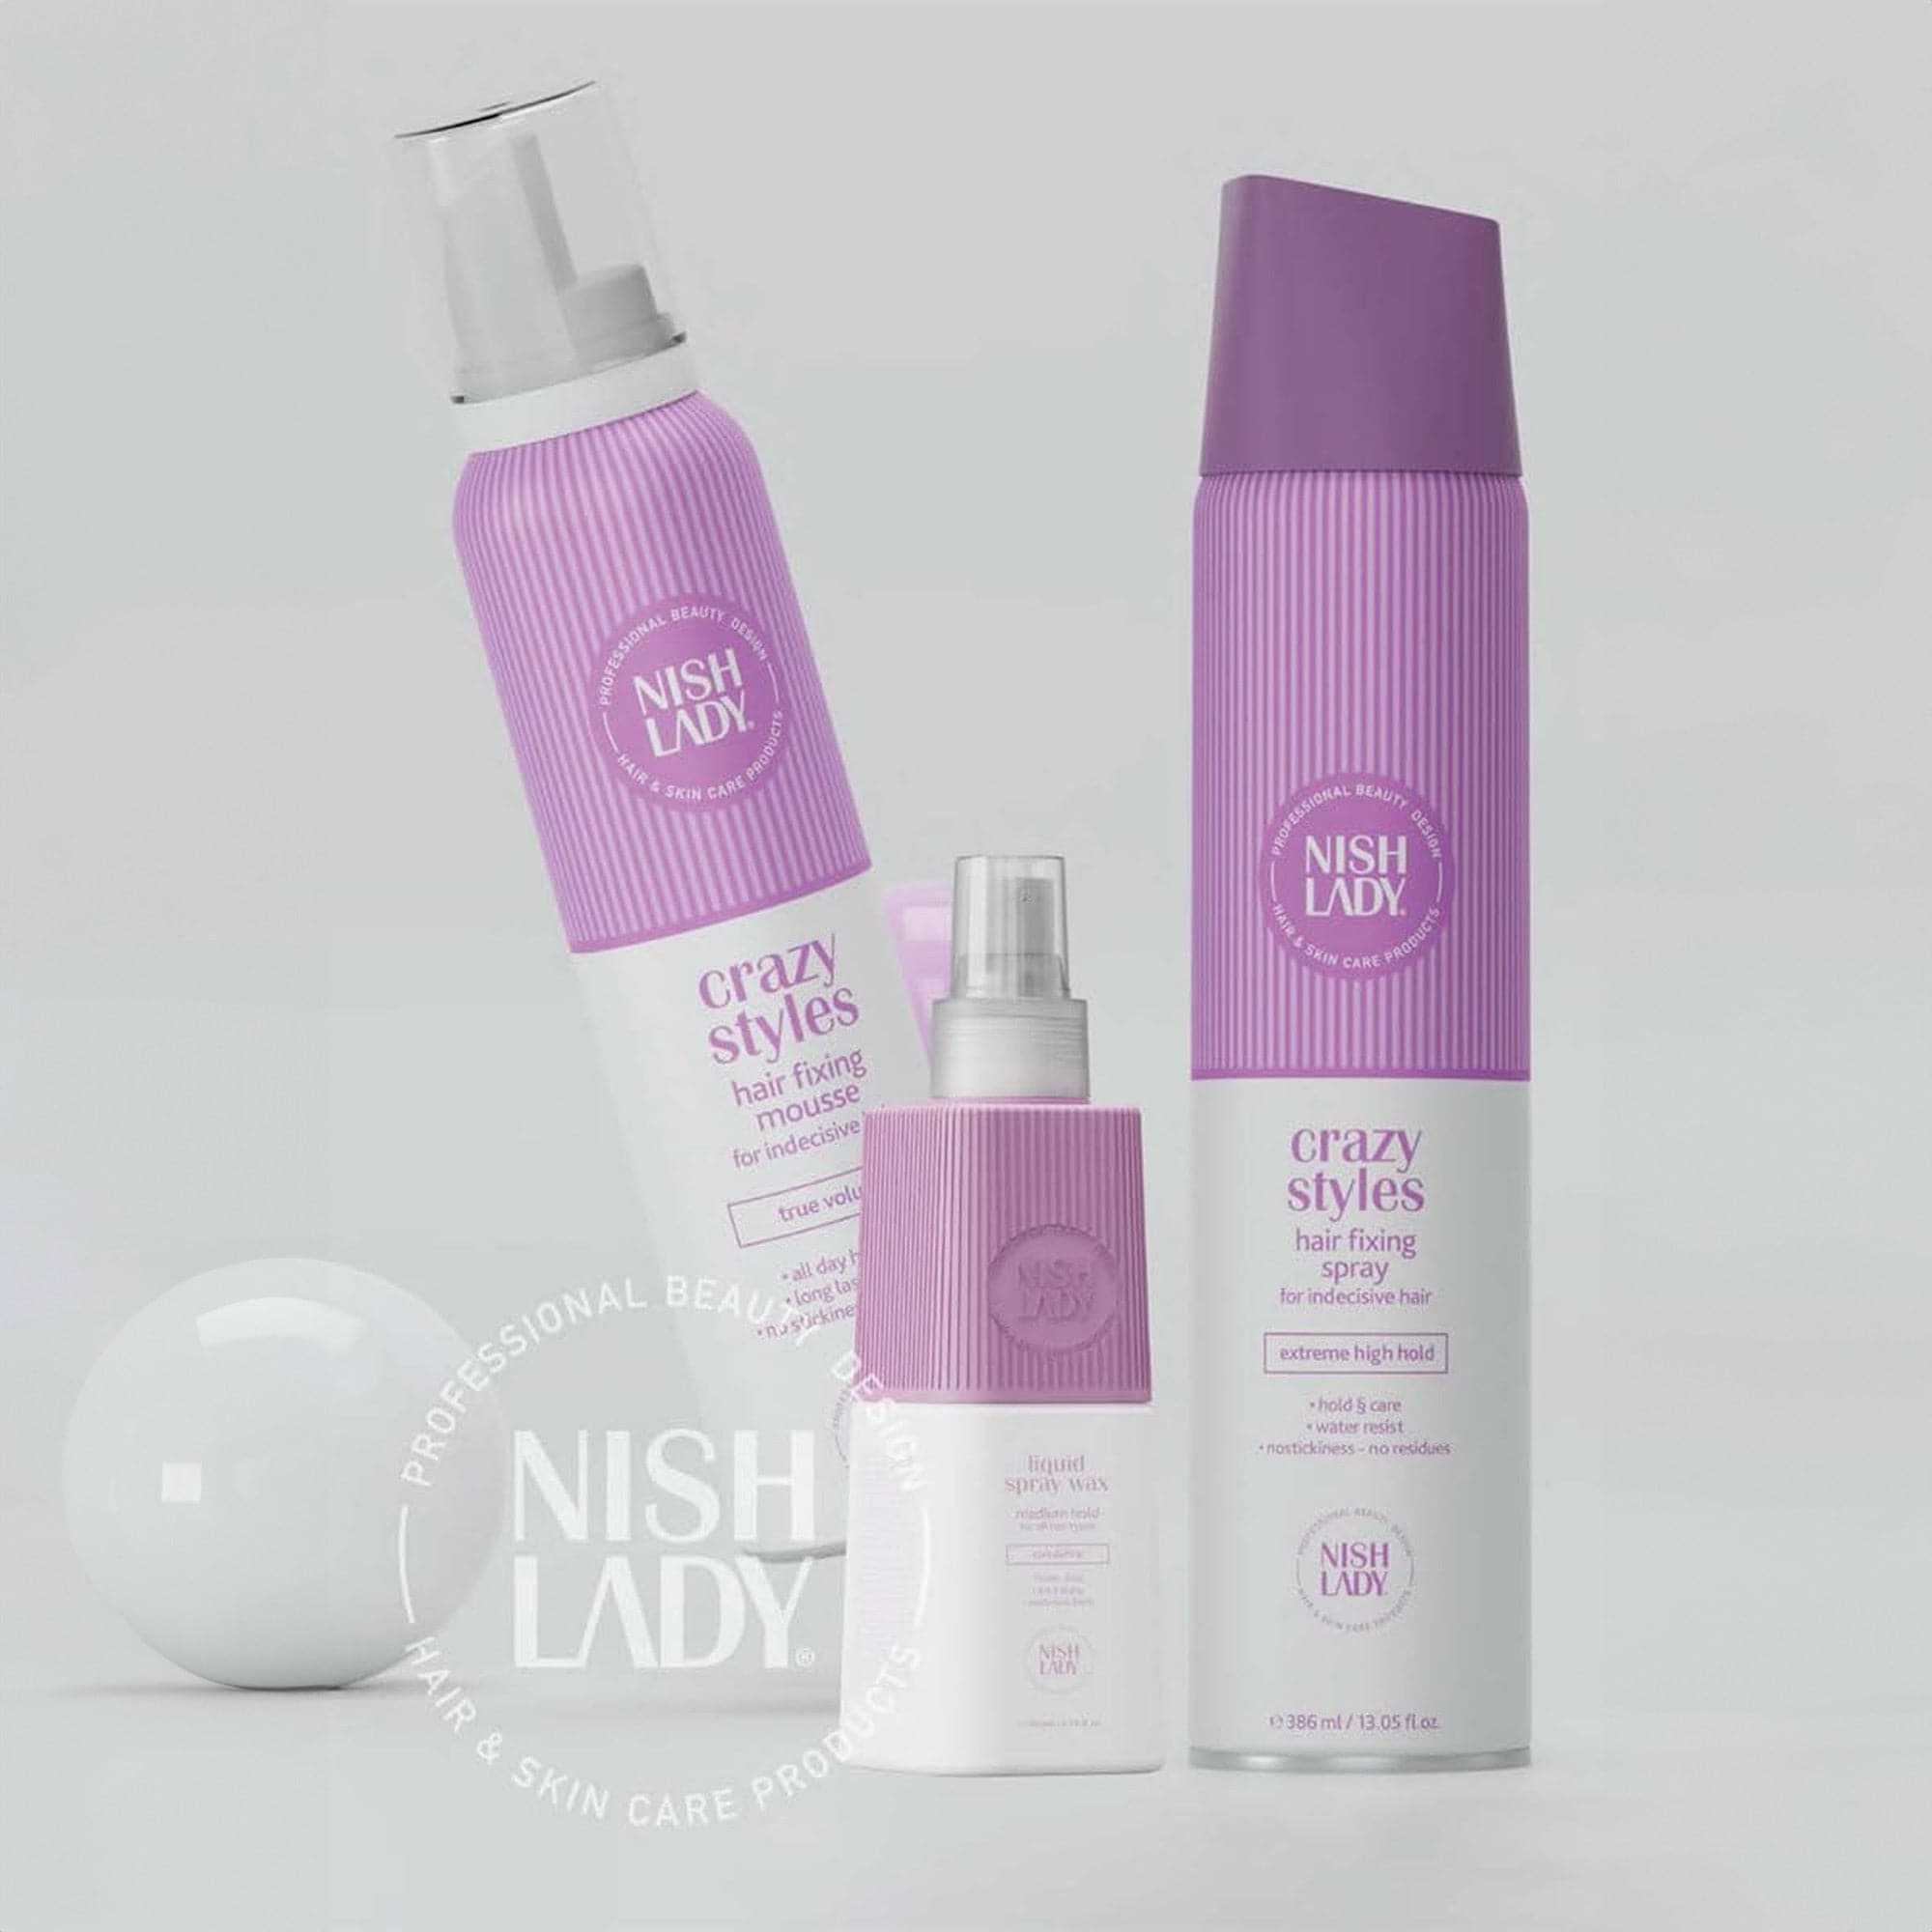 Nishlady - Dry Shampoo Crazy Styles 200ml